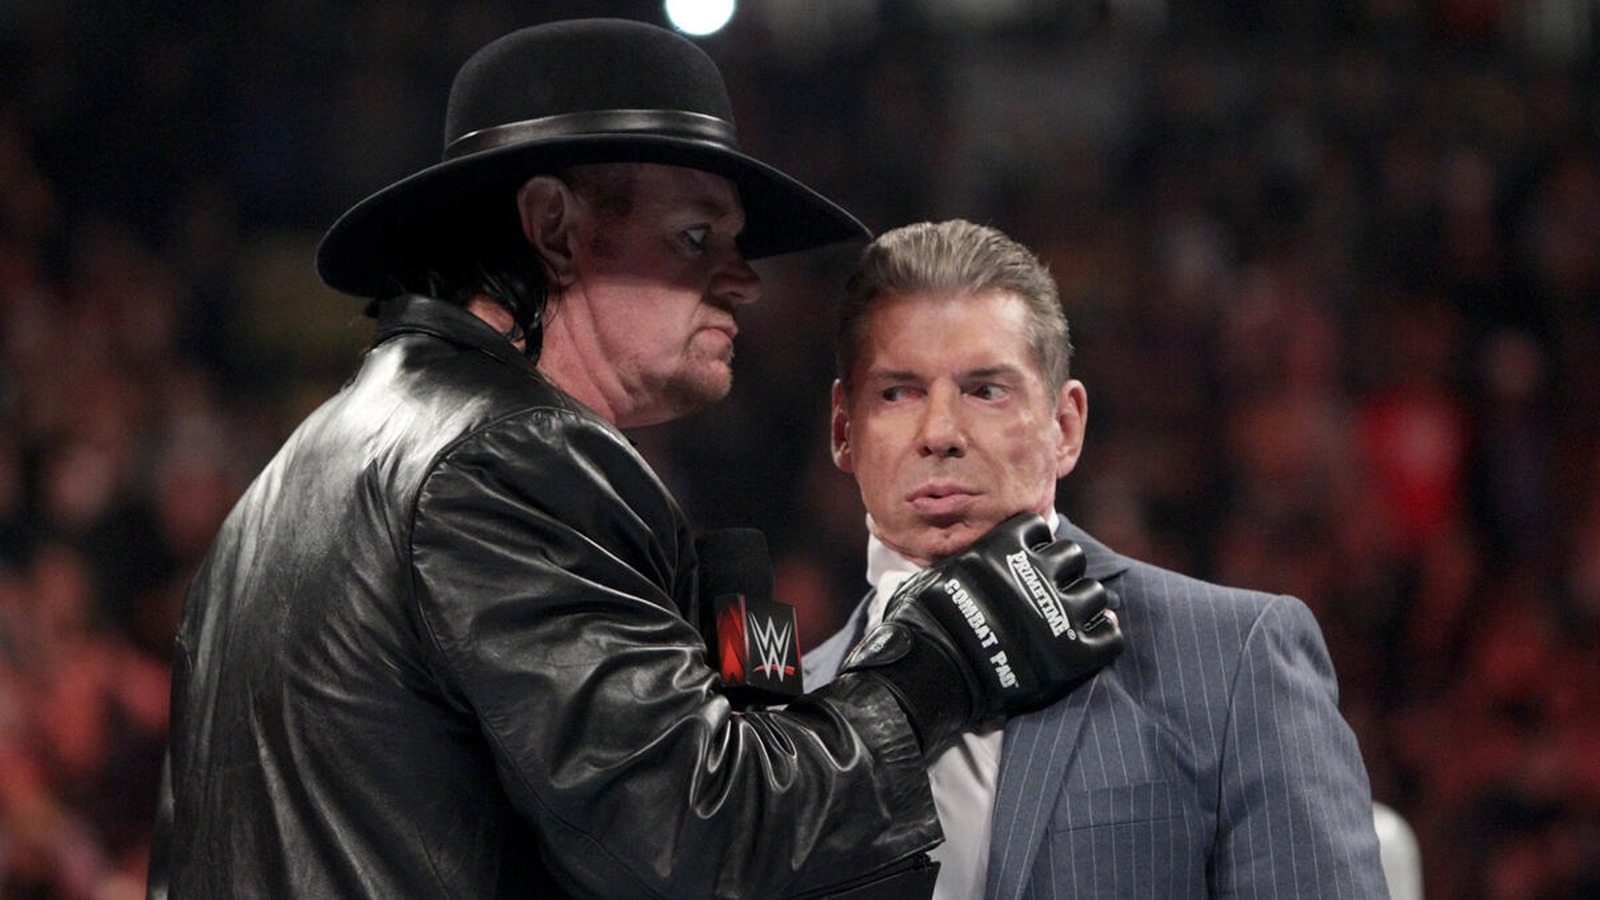 The Undertaker recuerda cuando el exjefe de la WWE Vince McMahon lo maldijo 'como a un perro'